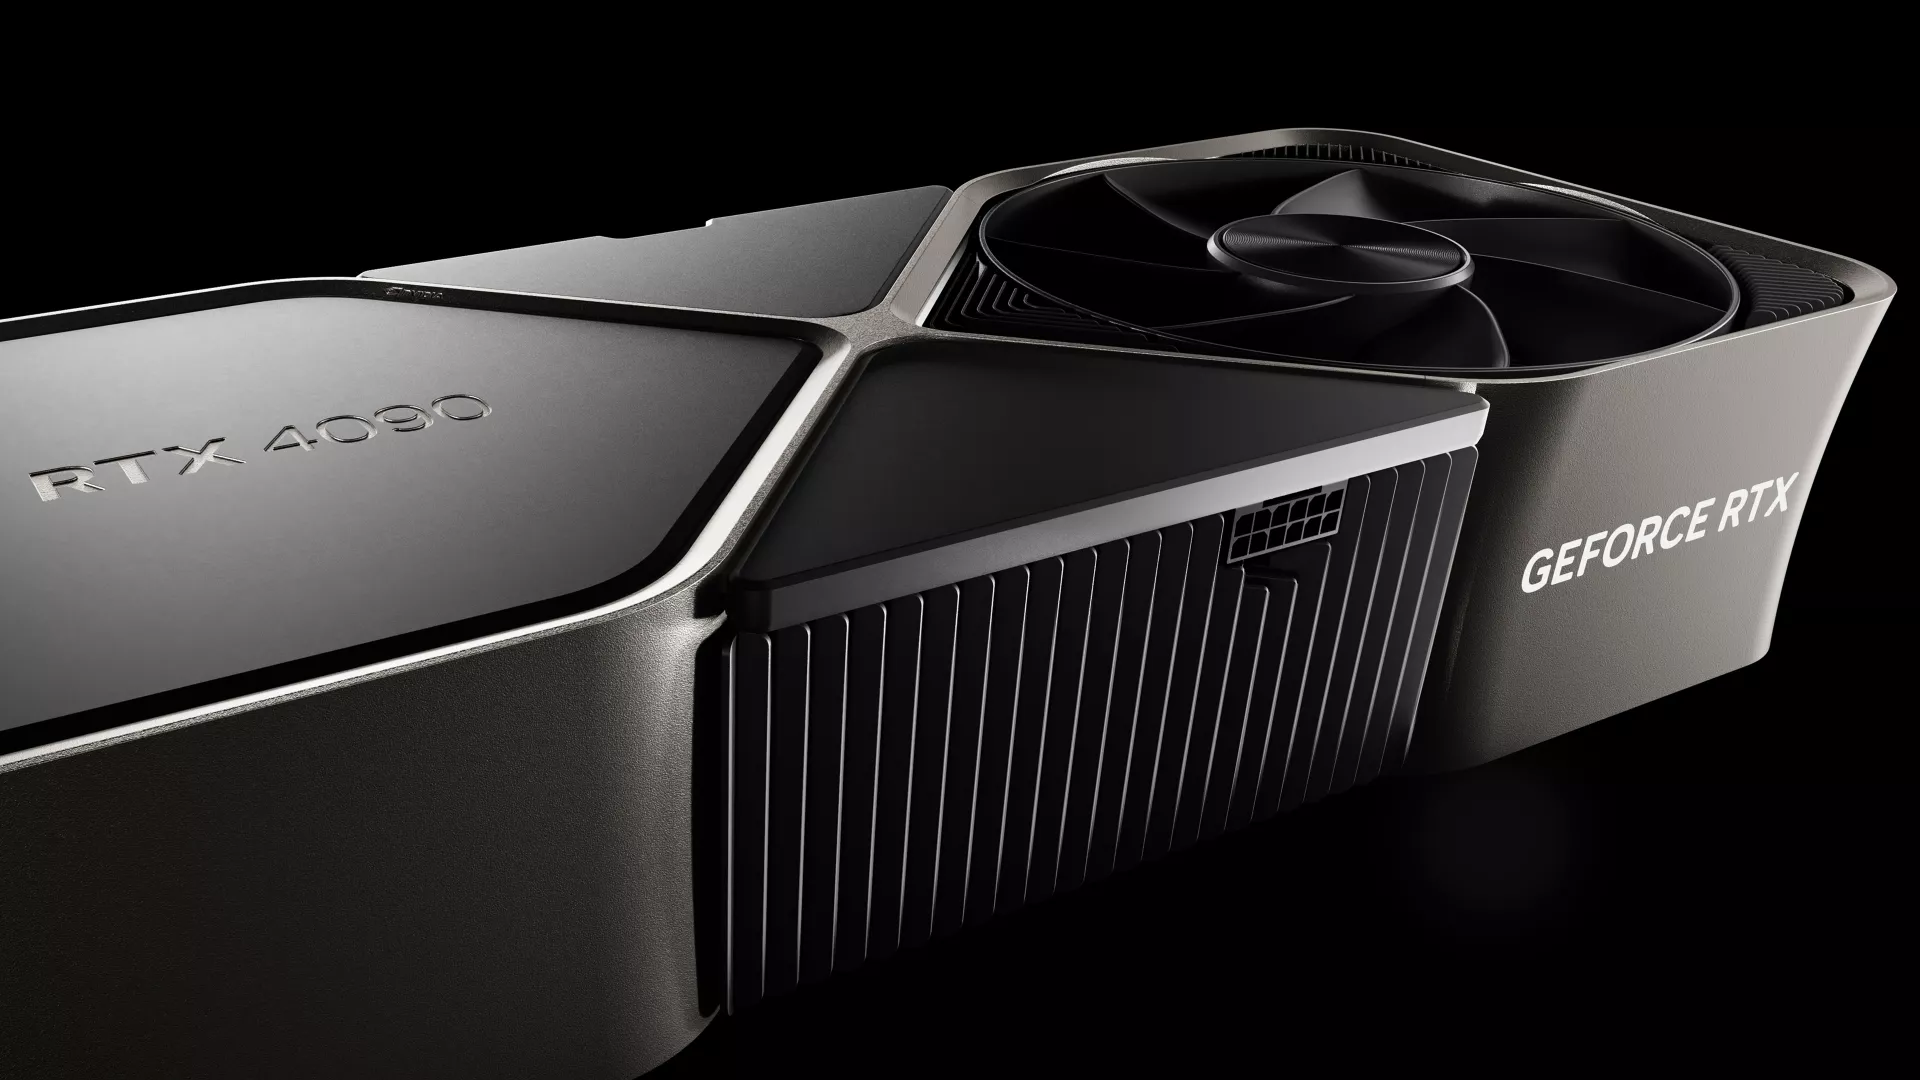 Η NVIDIA ακύρωσε την έκδοση GeForce RTX Titan αρχιτεκτονικής Ada Lovelace επειδή… έλιωνε τροφοδοτικά